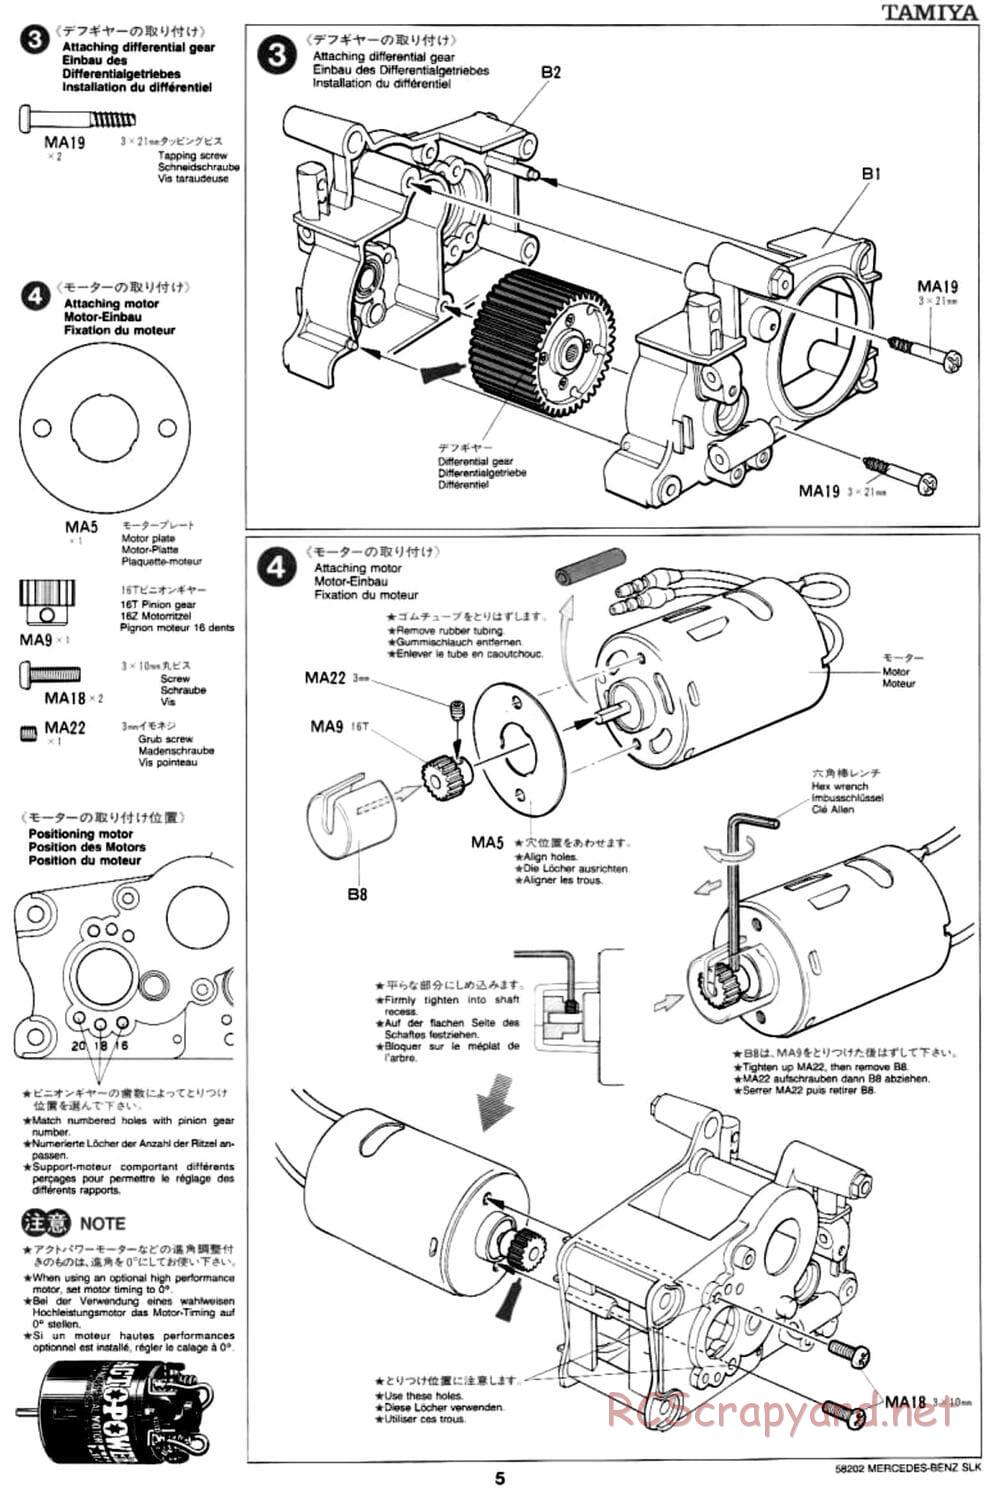 Tamiya - Mercedes-Benz SLK - M02L Chassis - Manual - Page 5